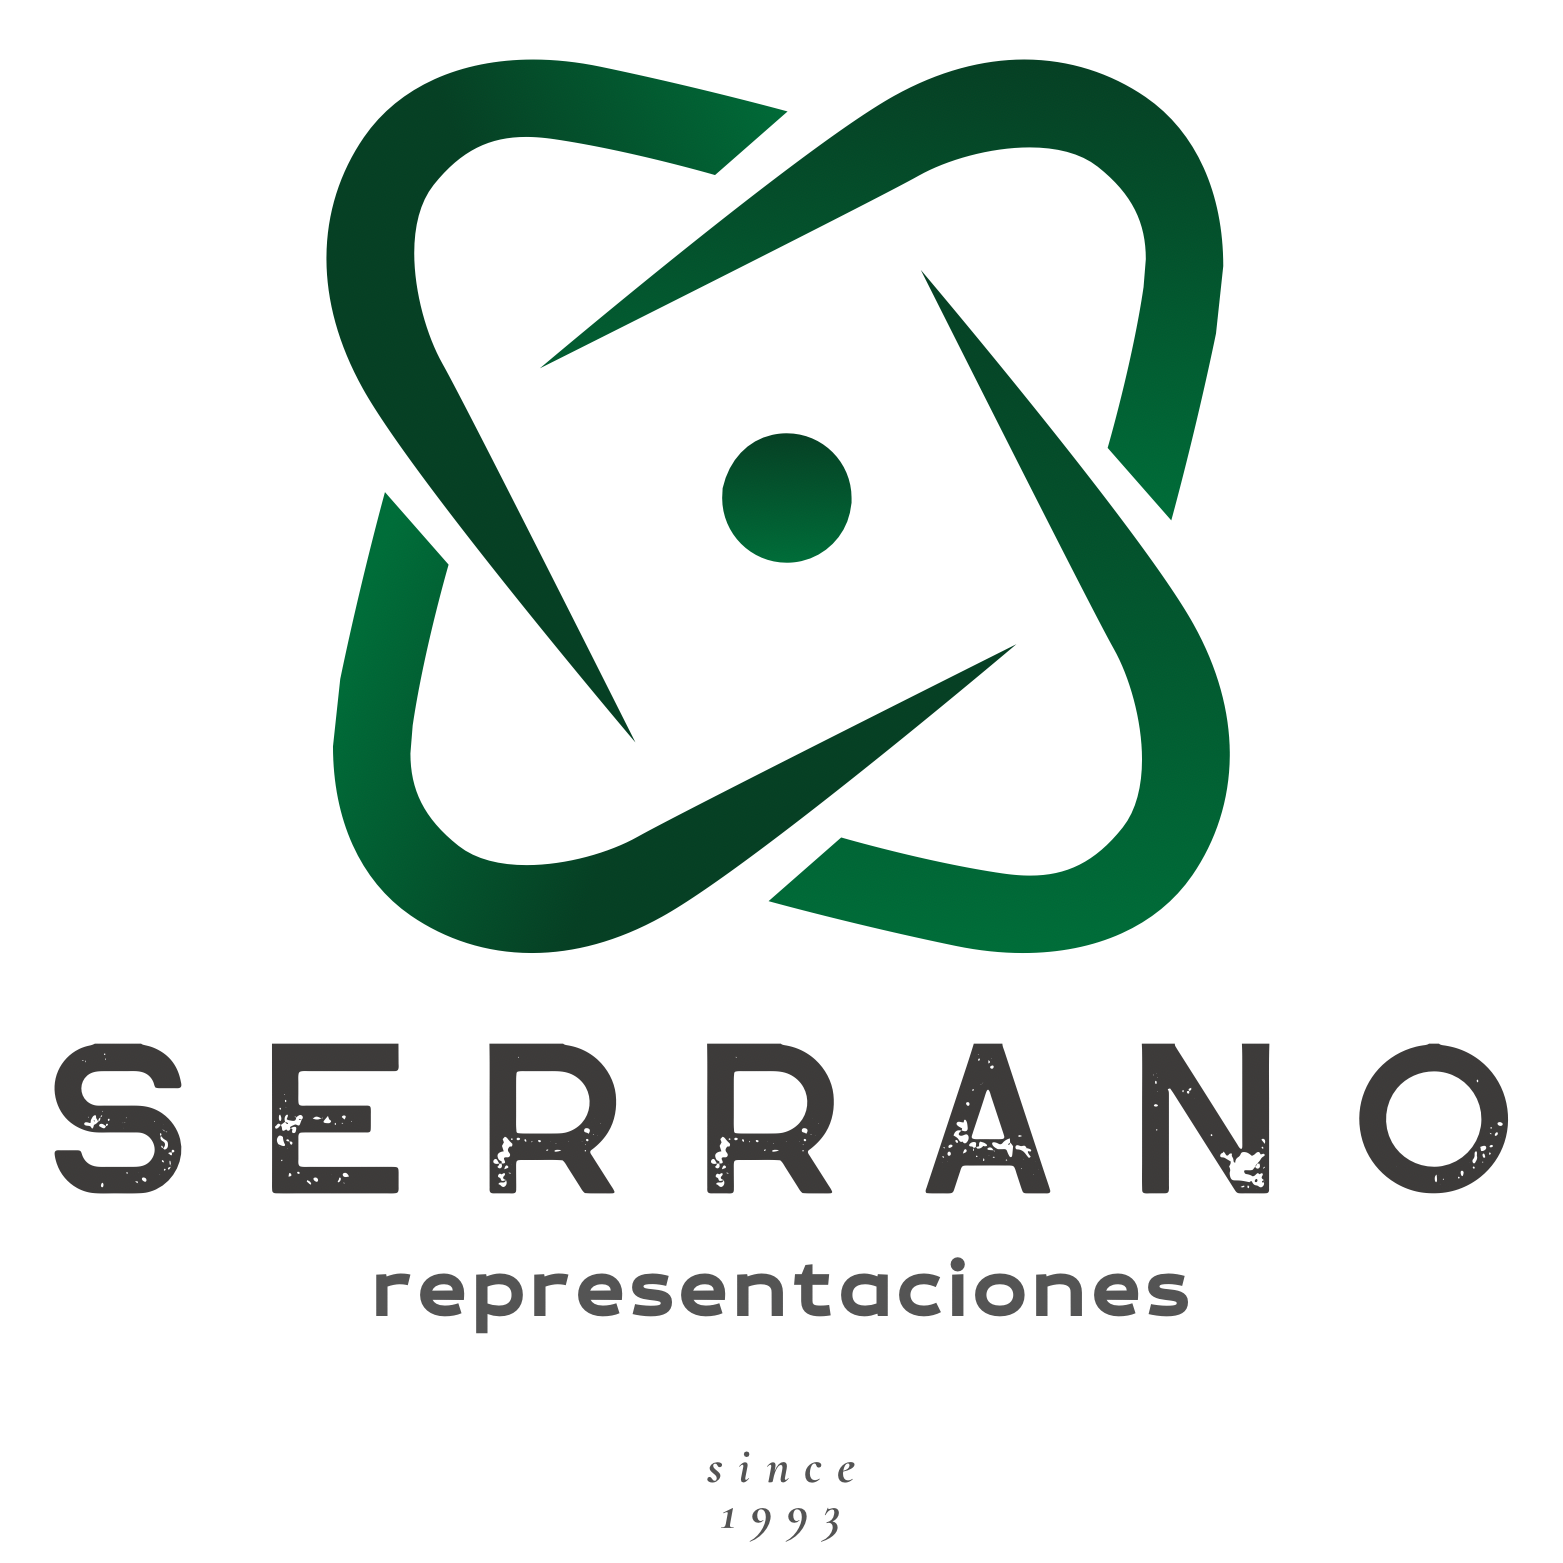 SERRANO REPRESENTACIONES, tiene como cometido las representaciones, en Andalucía Occidental y Extremadura, de las marcas:ORKLI, GENEBRE, GENWEC, COLLAK, MECALIA, NIELSENCLIMA,CASTOLIN y PRHIE